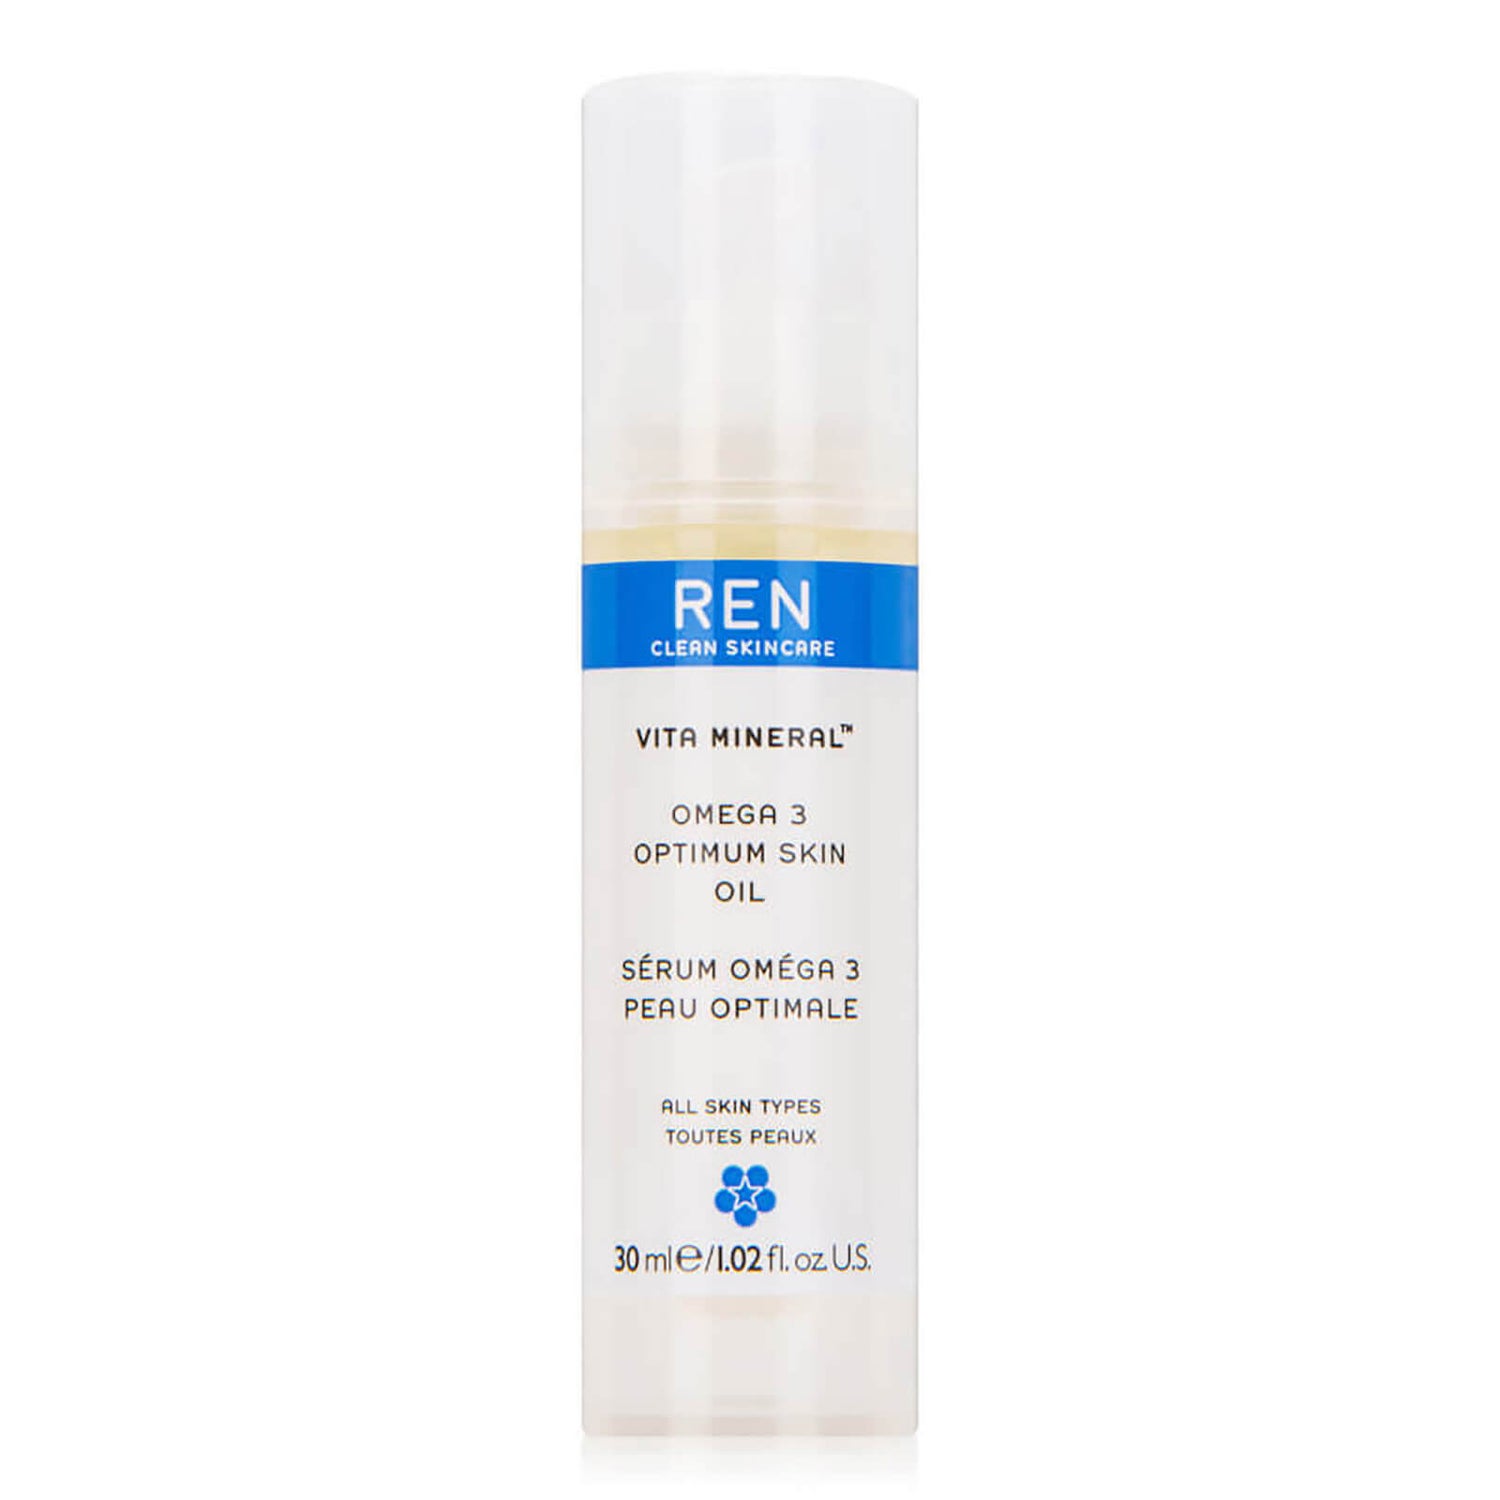 REN Clean Skincare Vita Mineral Omega 3 Optimum Skin Oil (1.02 fl. oz.)